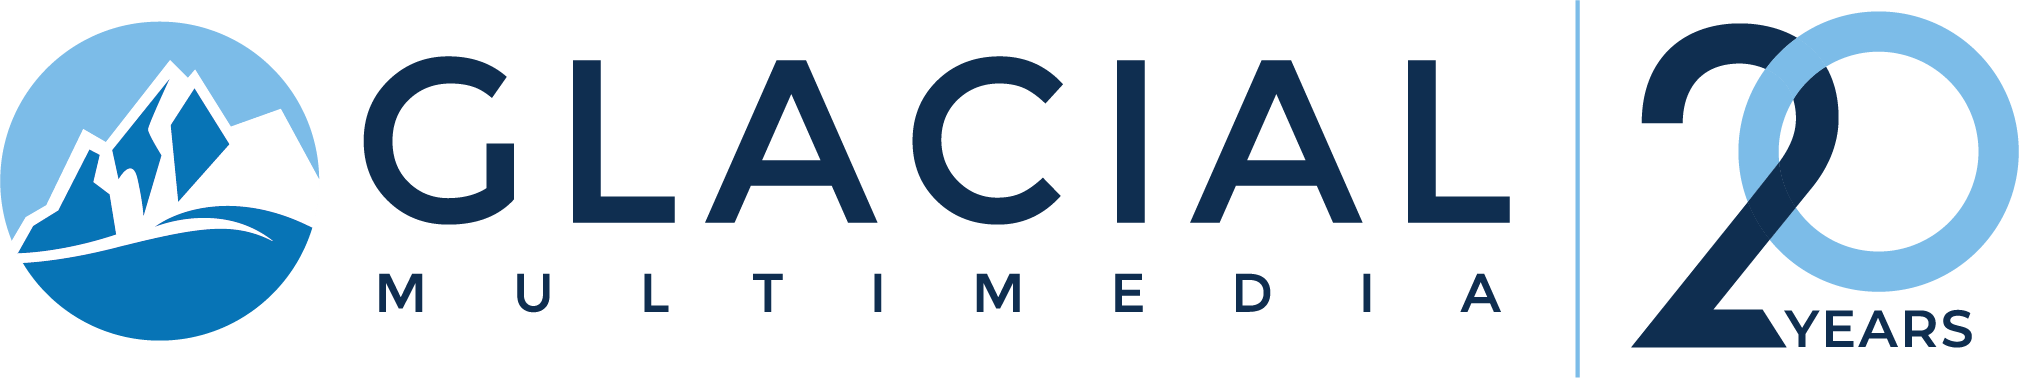 Glacial Logo